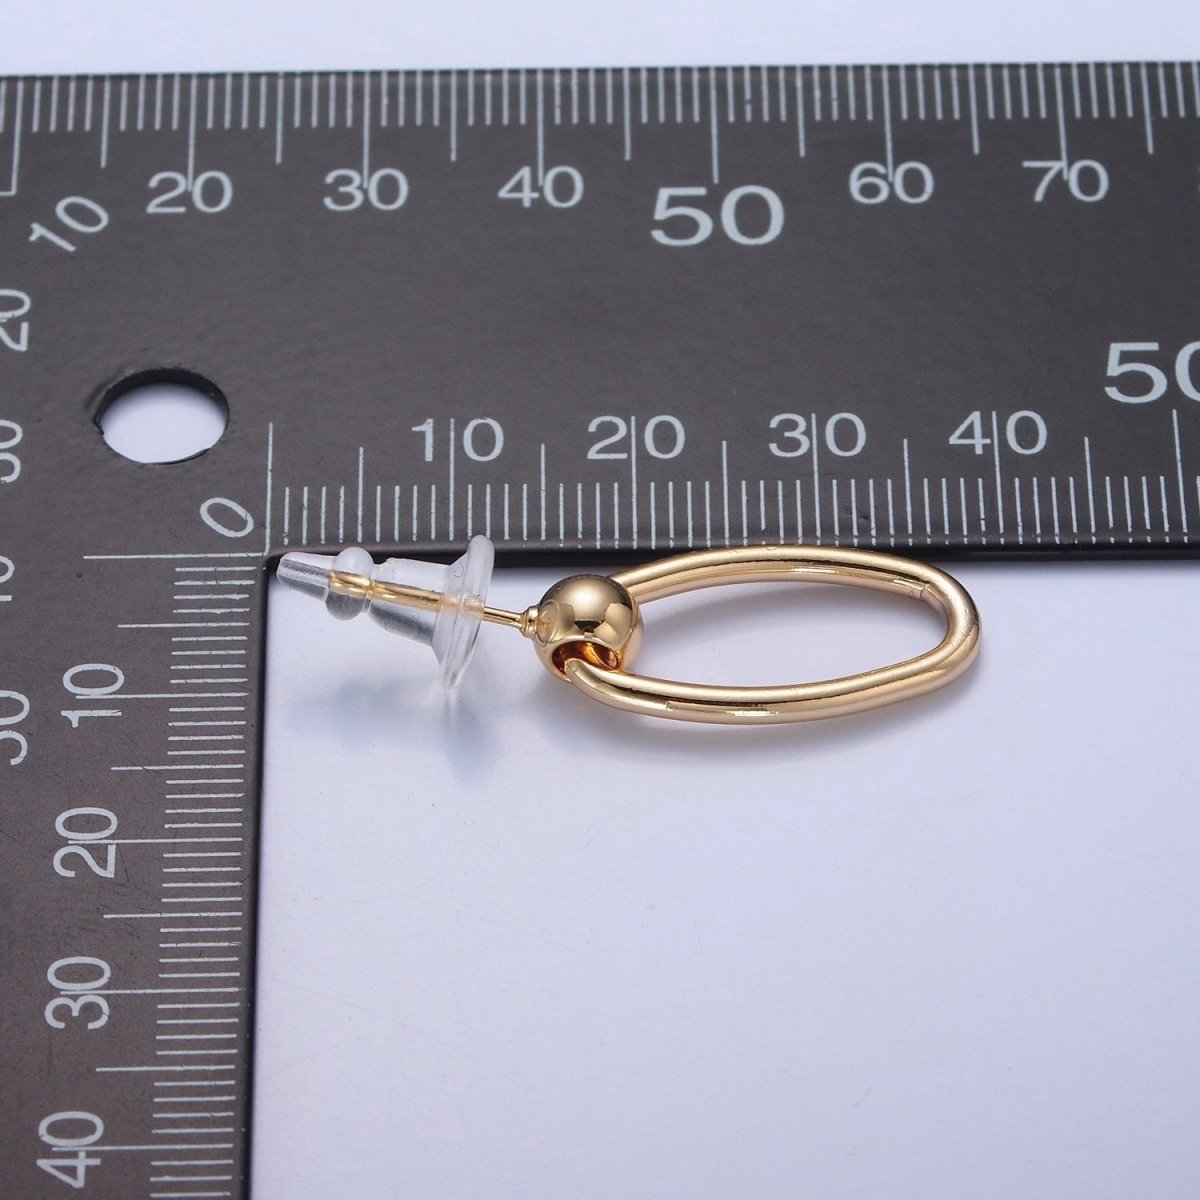 Post Earrings, Gold Hoop Earrings, Post with Hoop, Oval Hoop Earring V-391 - DLUXCA